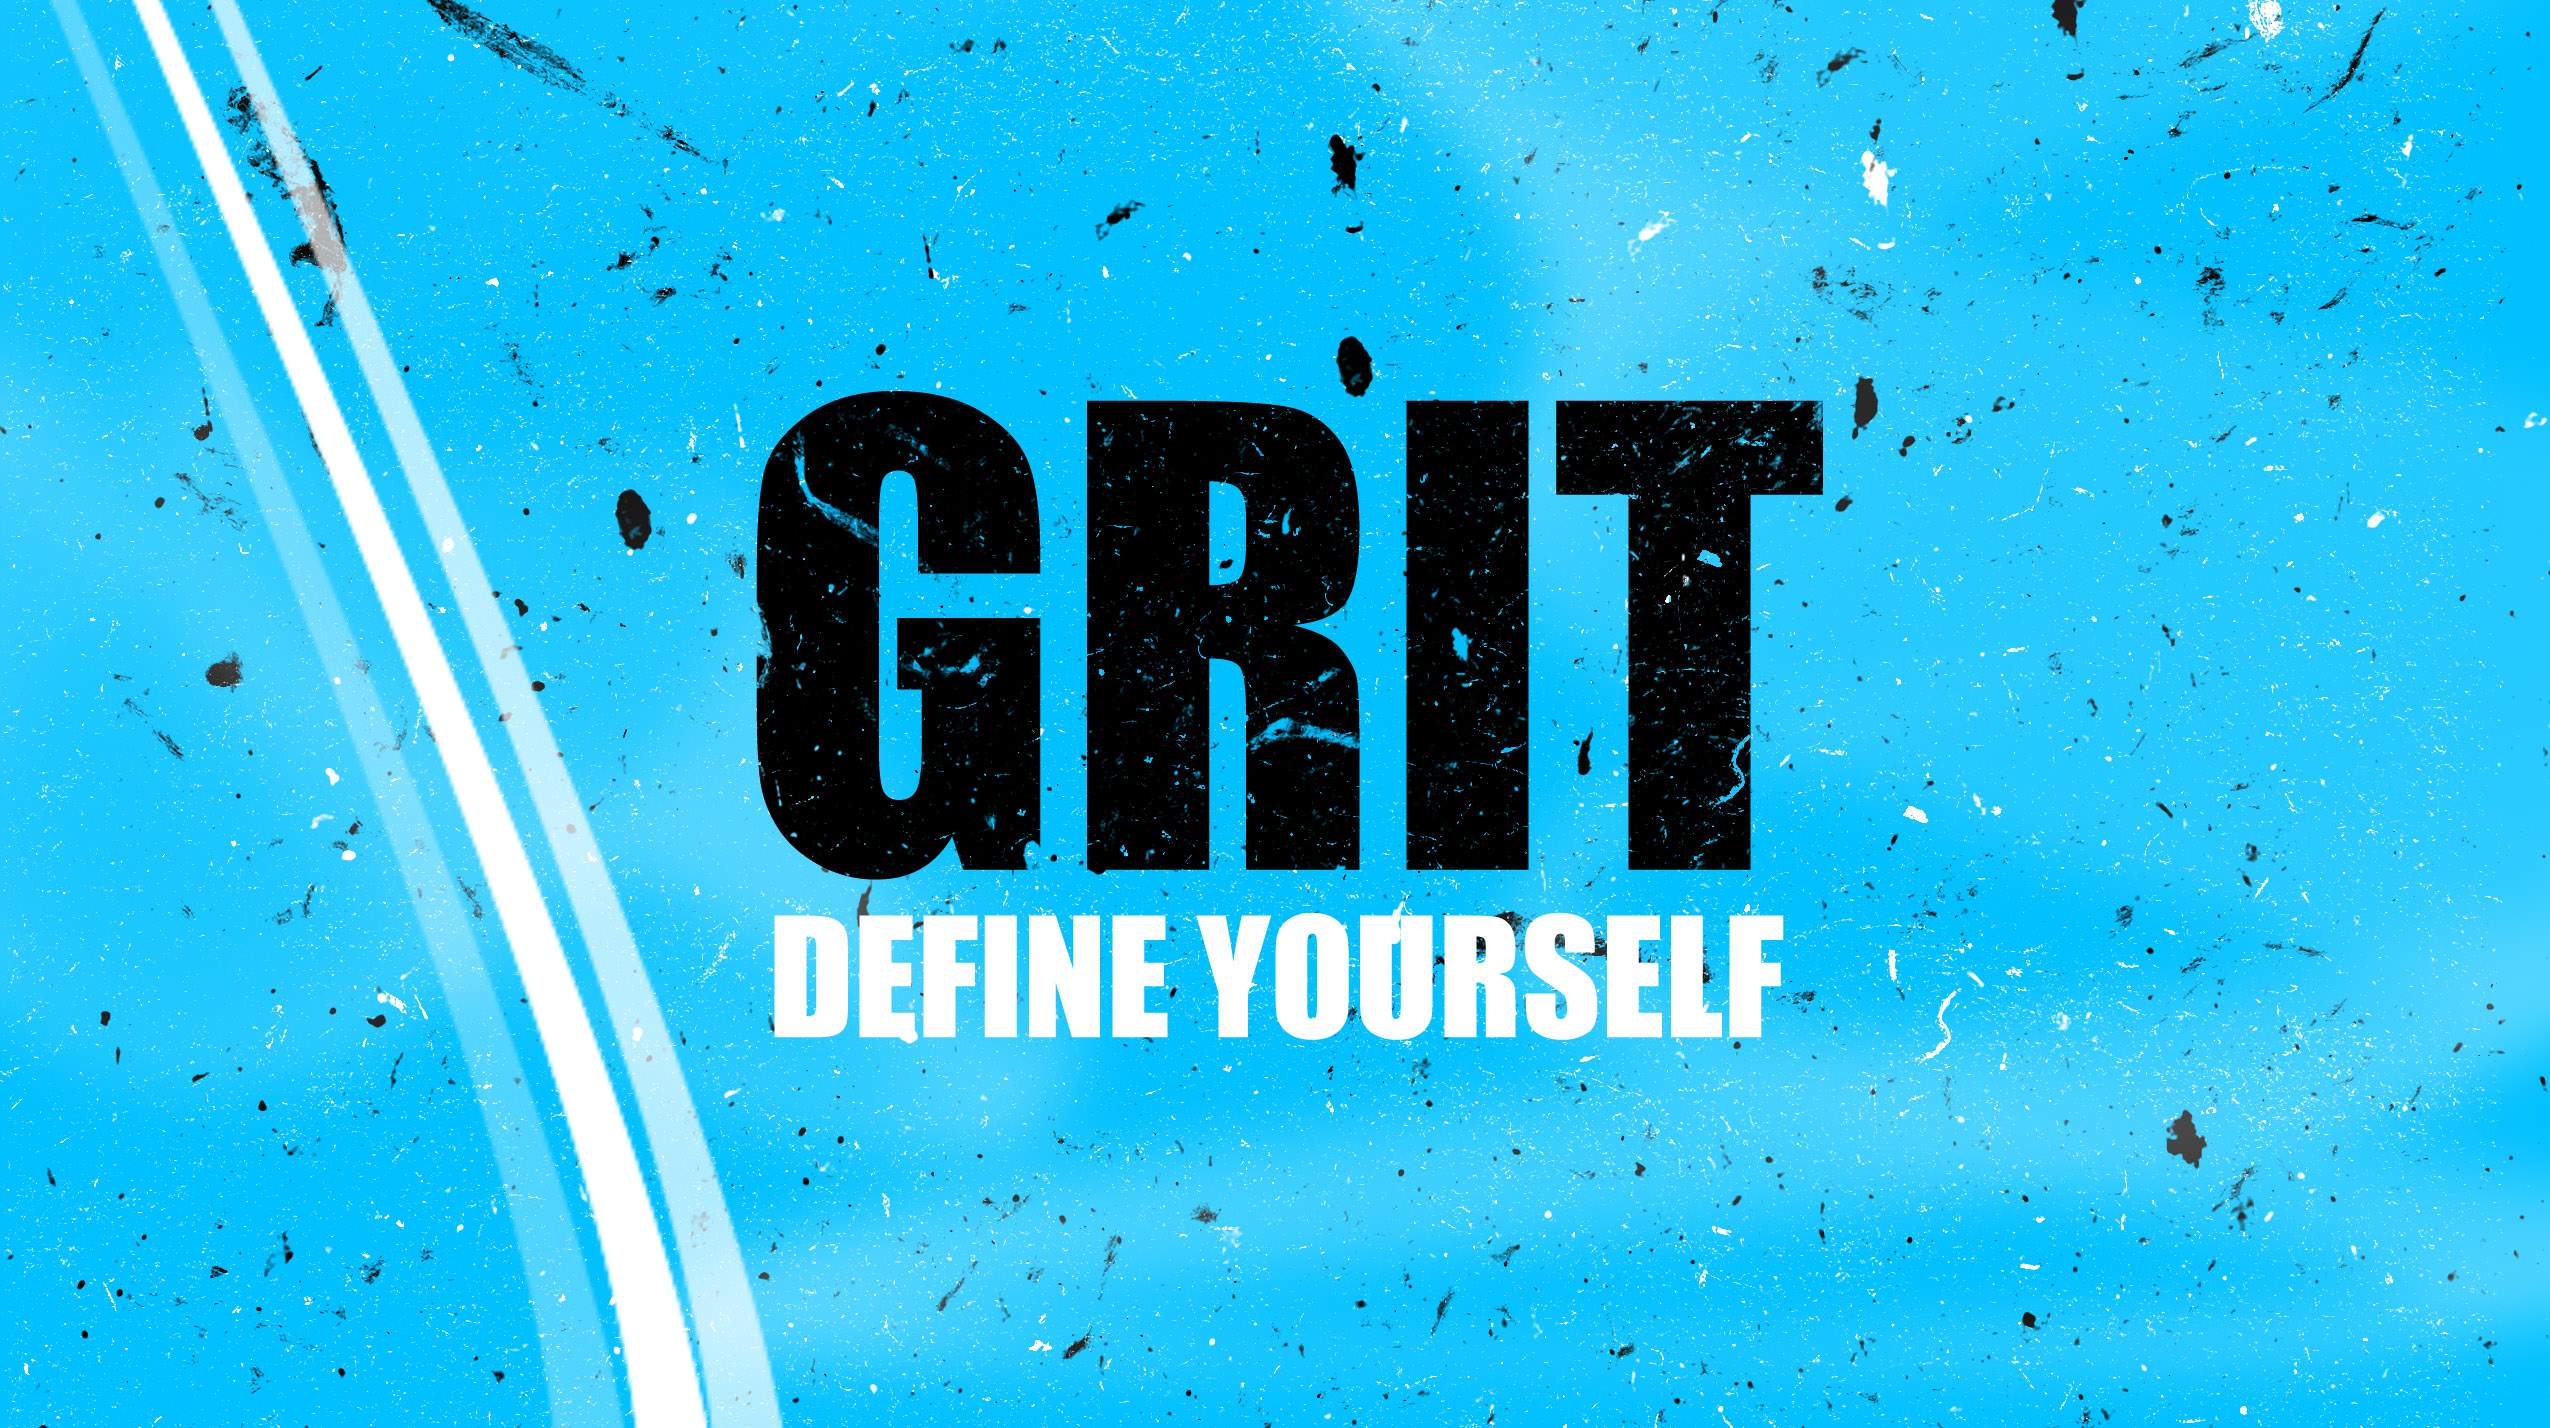 Grit and Grind Wallpaper by Lancetastic27 on DeviantArt